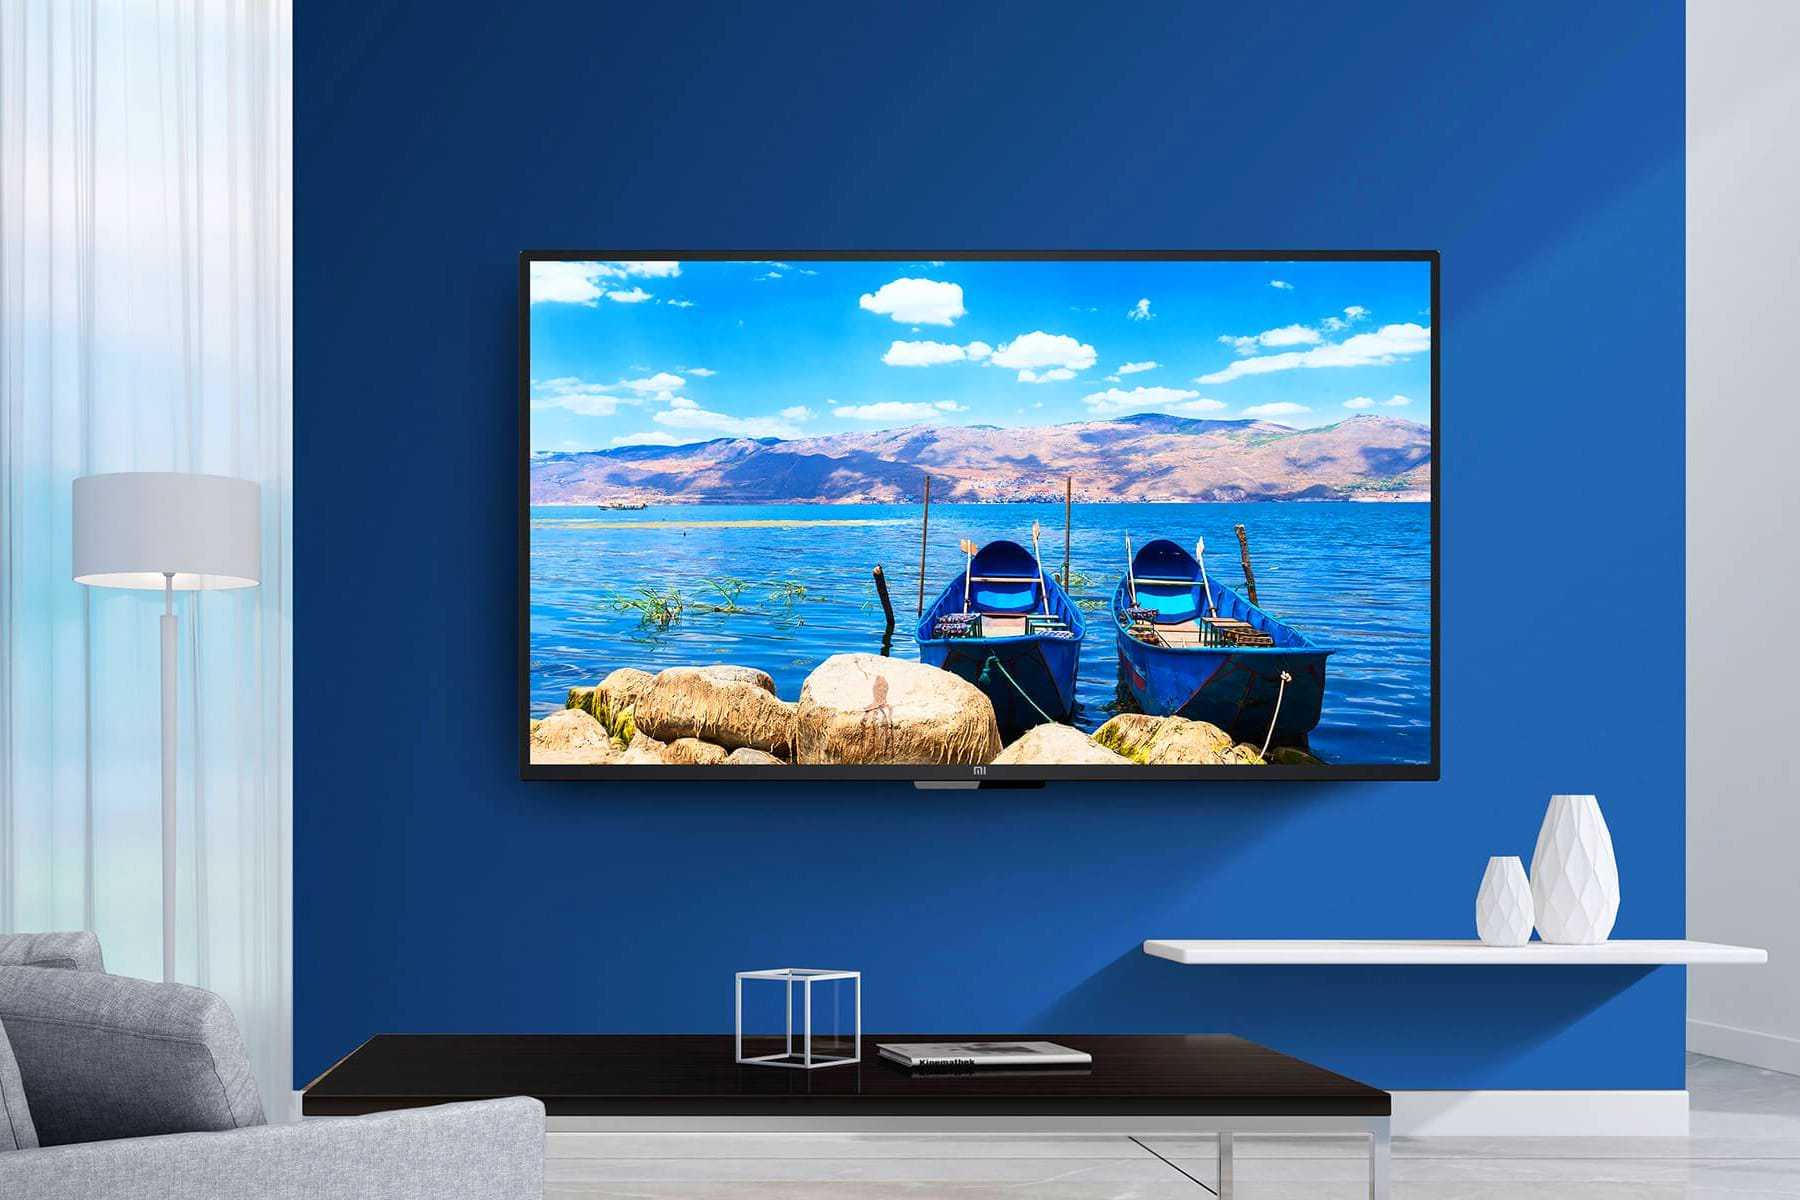 Компания Xiaomi представила еще один телевизор на базе OLED-экране презентация которого состоится 11 августа Модель получит 65-дюймовый телевизор который уже показали